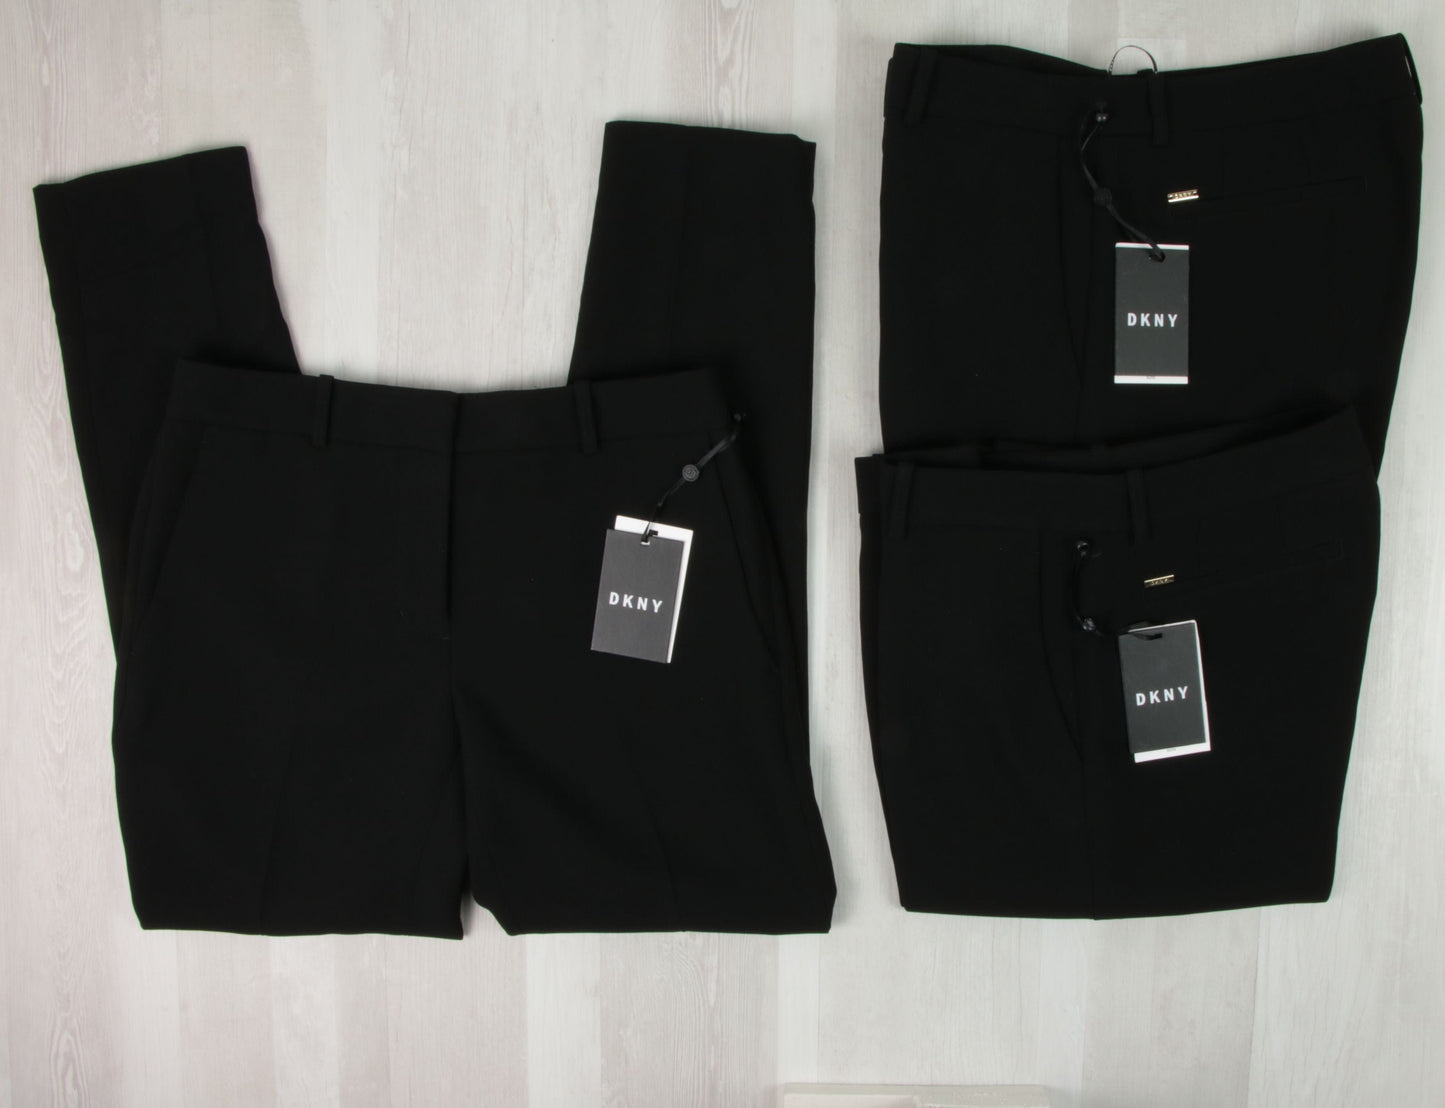 stock abbigliamento donna - €16,48 al pezzo POLO RALPH LAUREN, DKNY, ANIYE BY, NOPE, LE STREGHE ecc. 42 pezzi da donna - A/I - RIF. 3904